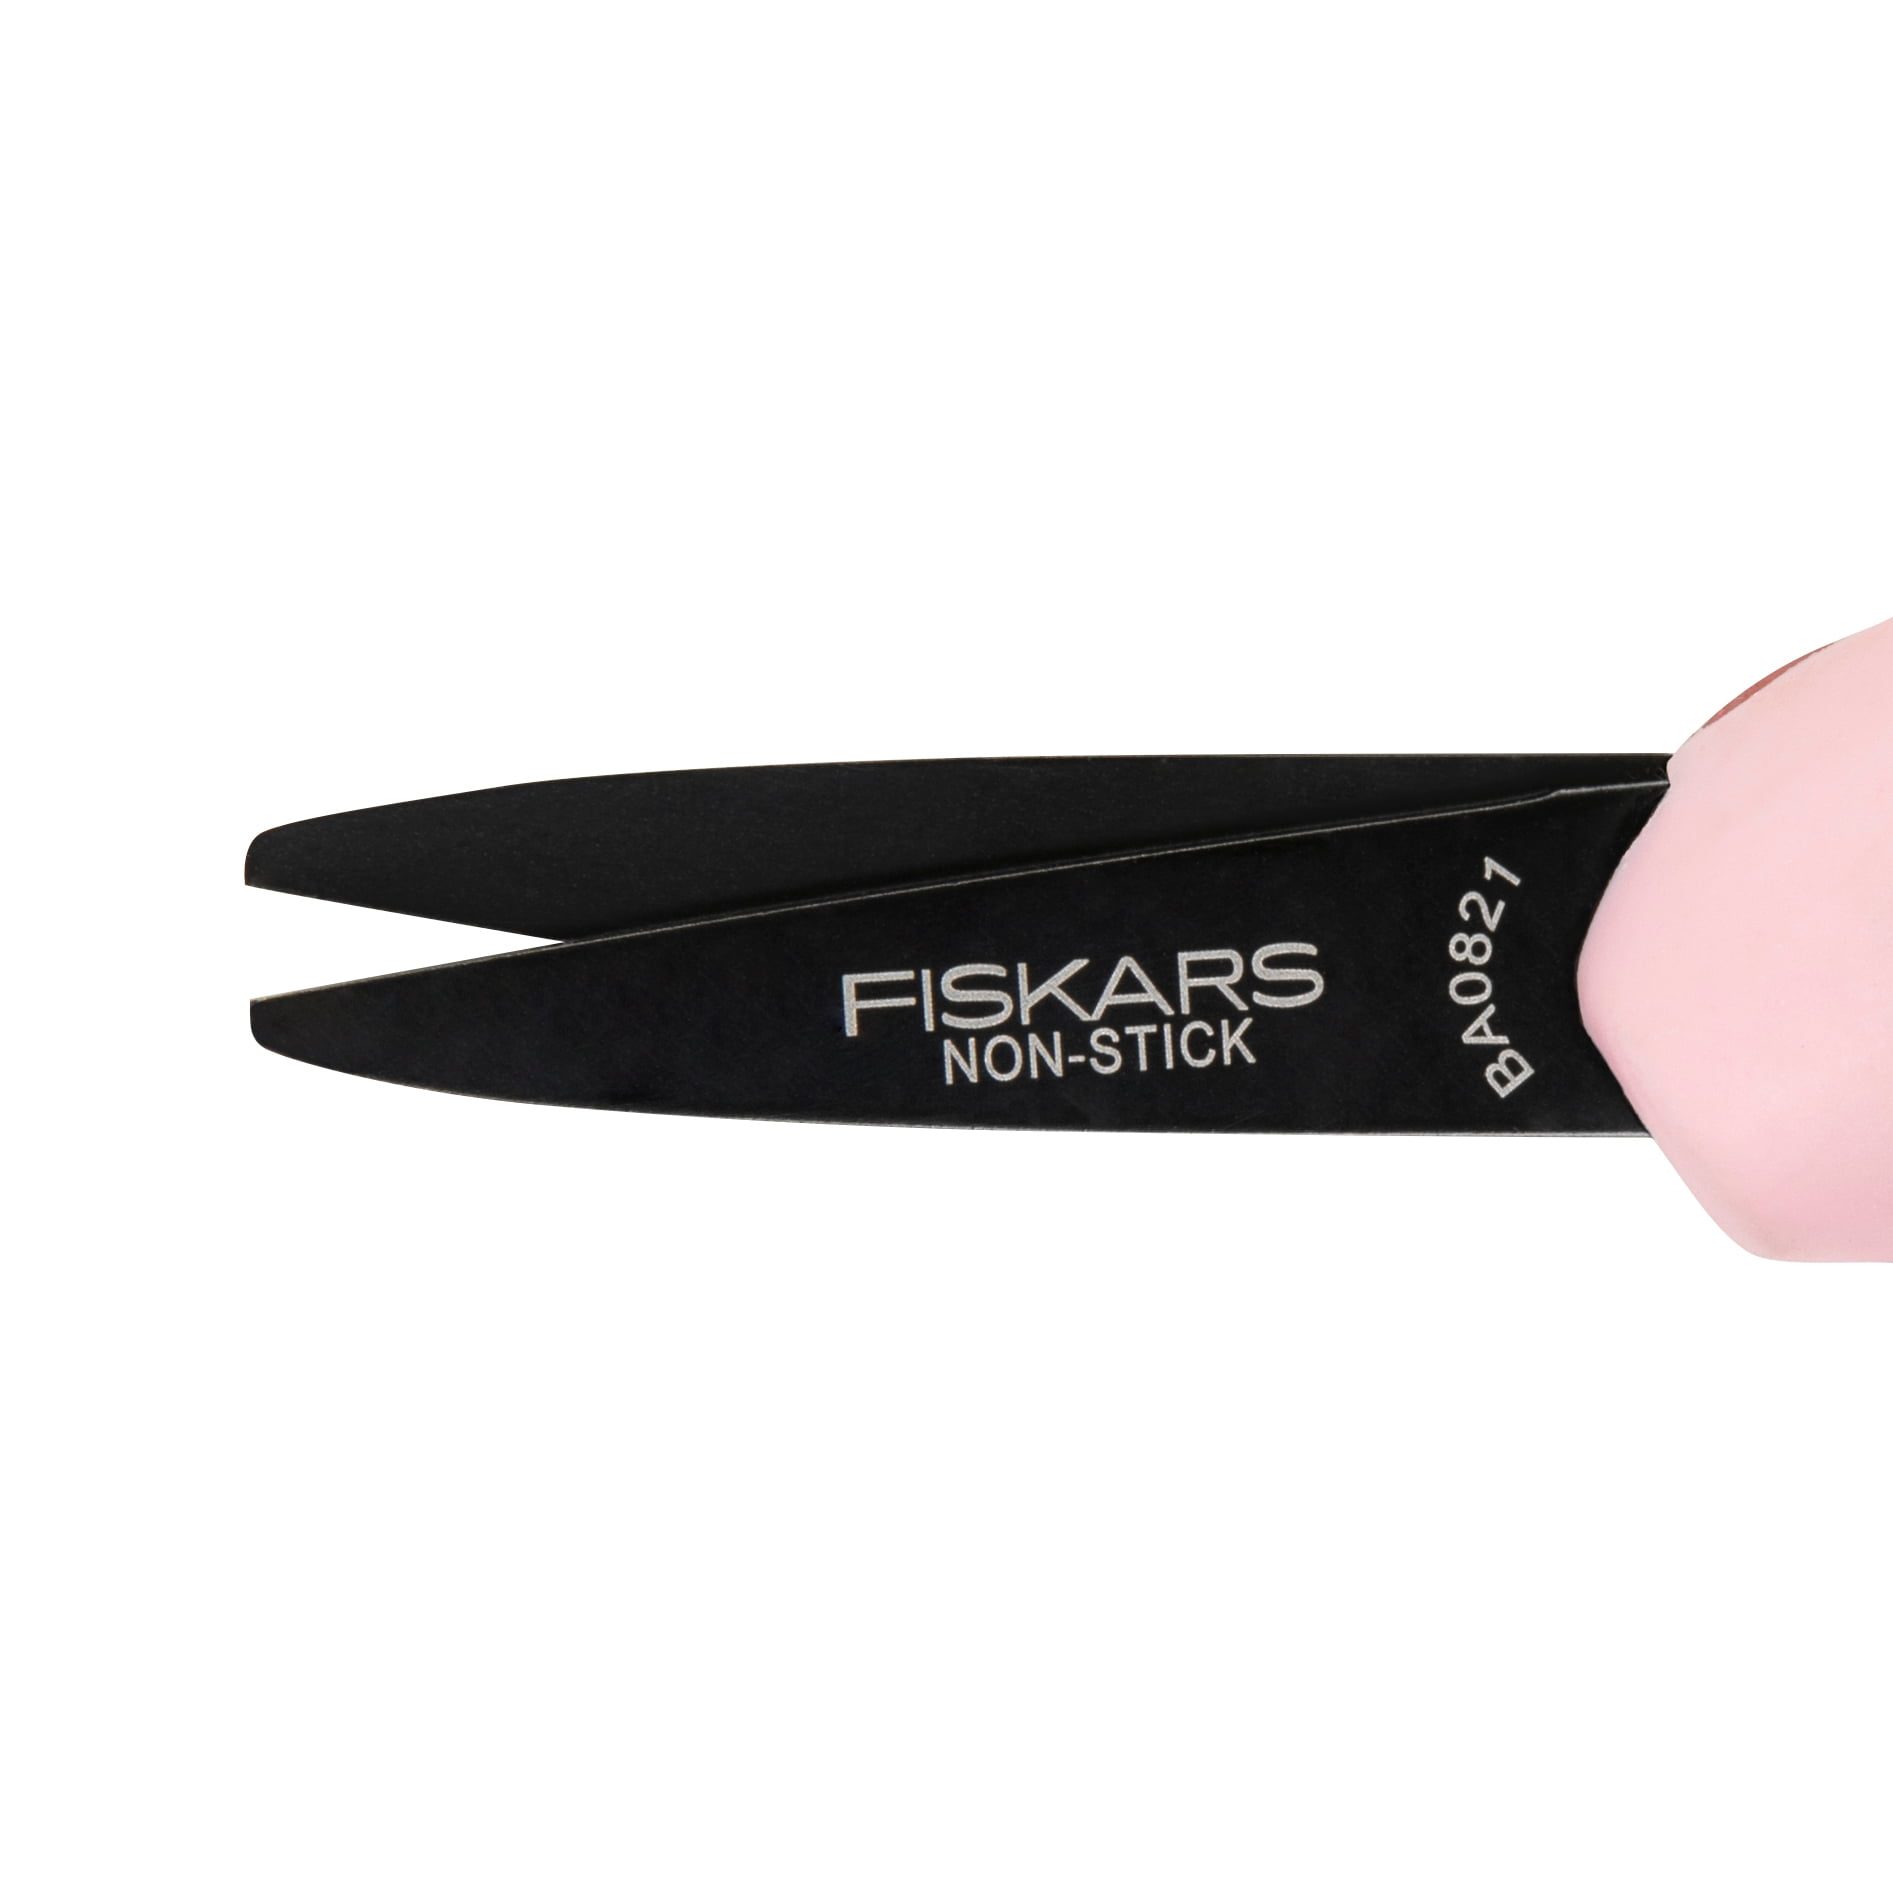 2 - Fiskars 134302 5 Scissors for Kids Pointed Tip Ballerina